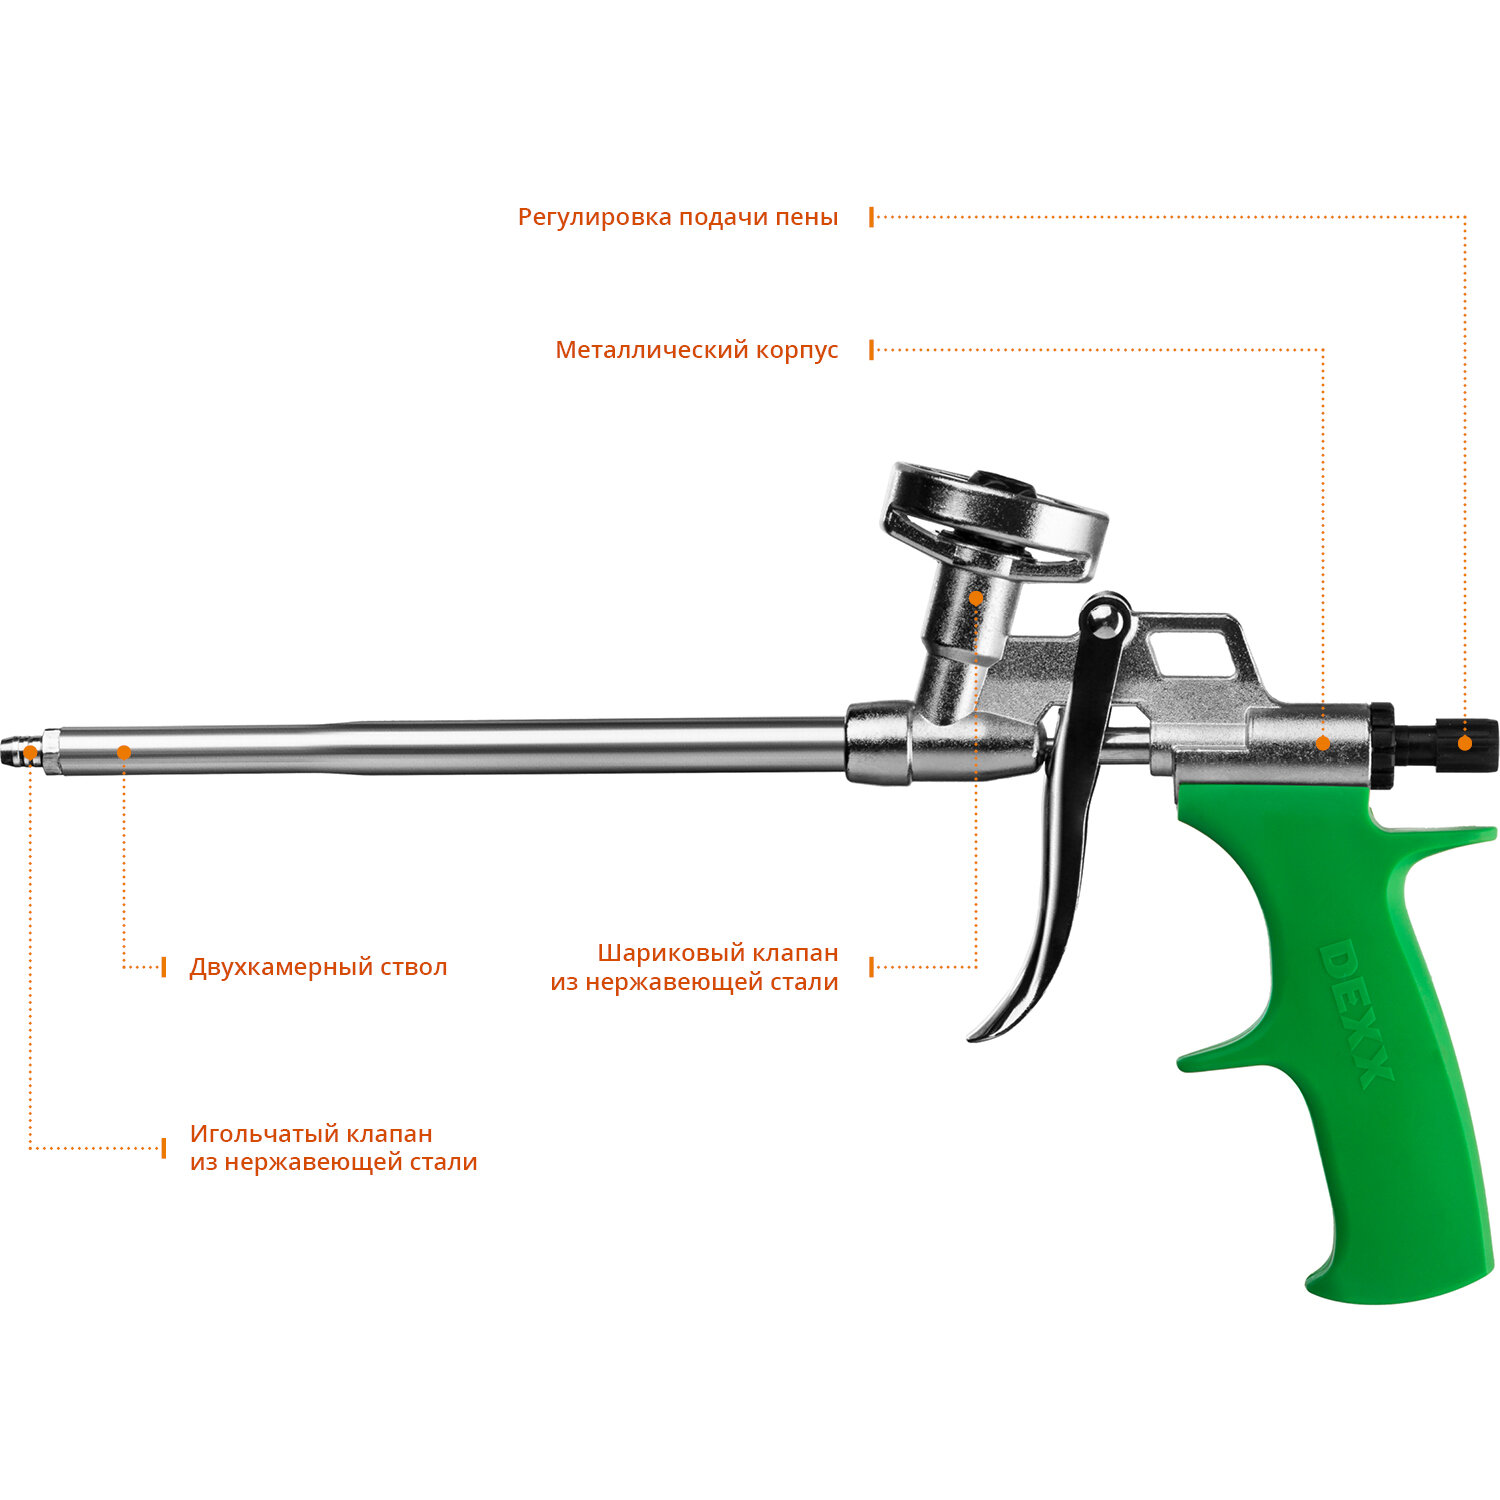 DEXX Пистолет для монтажной пены "PRO METAL", металлический корпус, регулировка подачи пены, DEXX